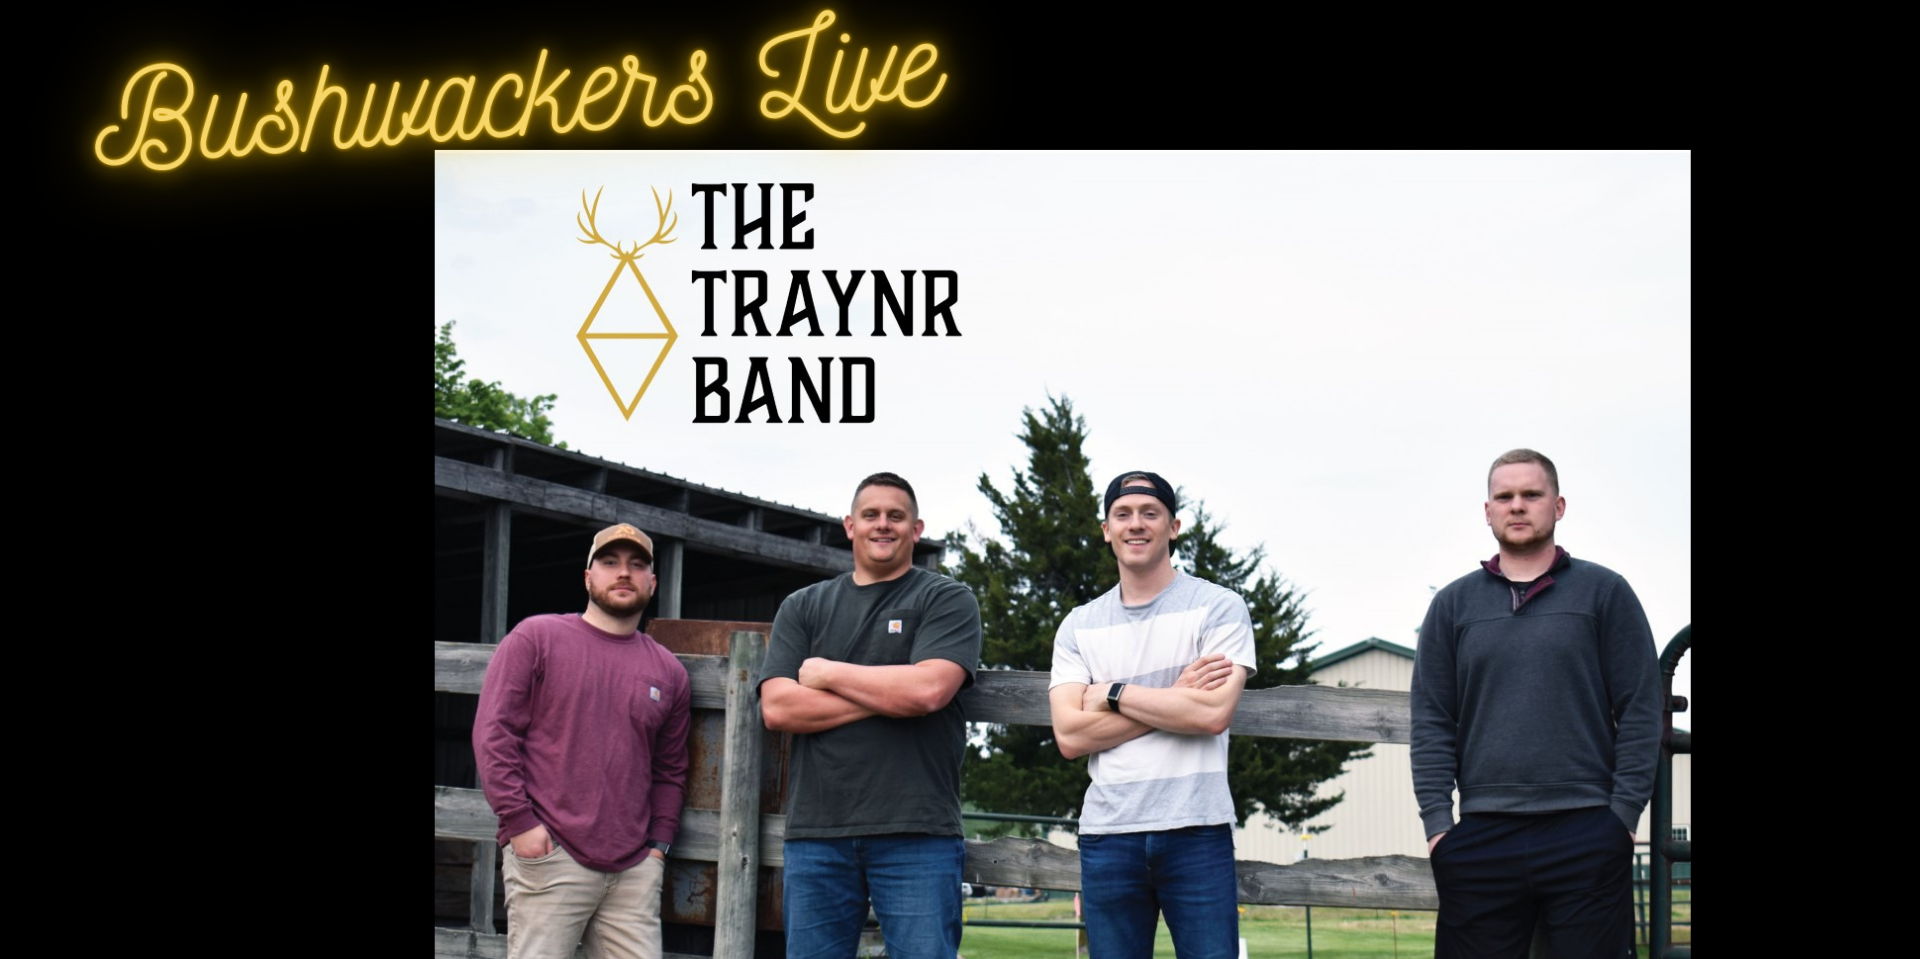 Bushwackers Live: The Traynr Band promotional image